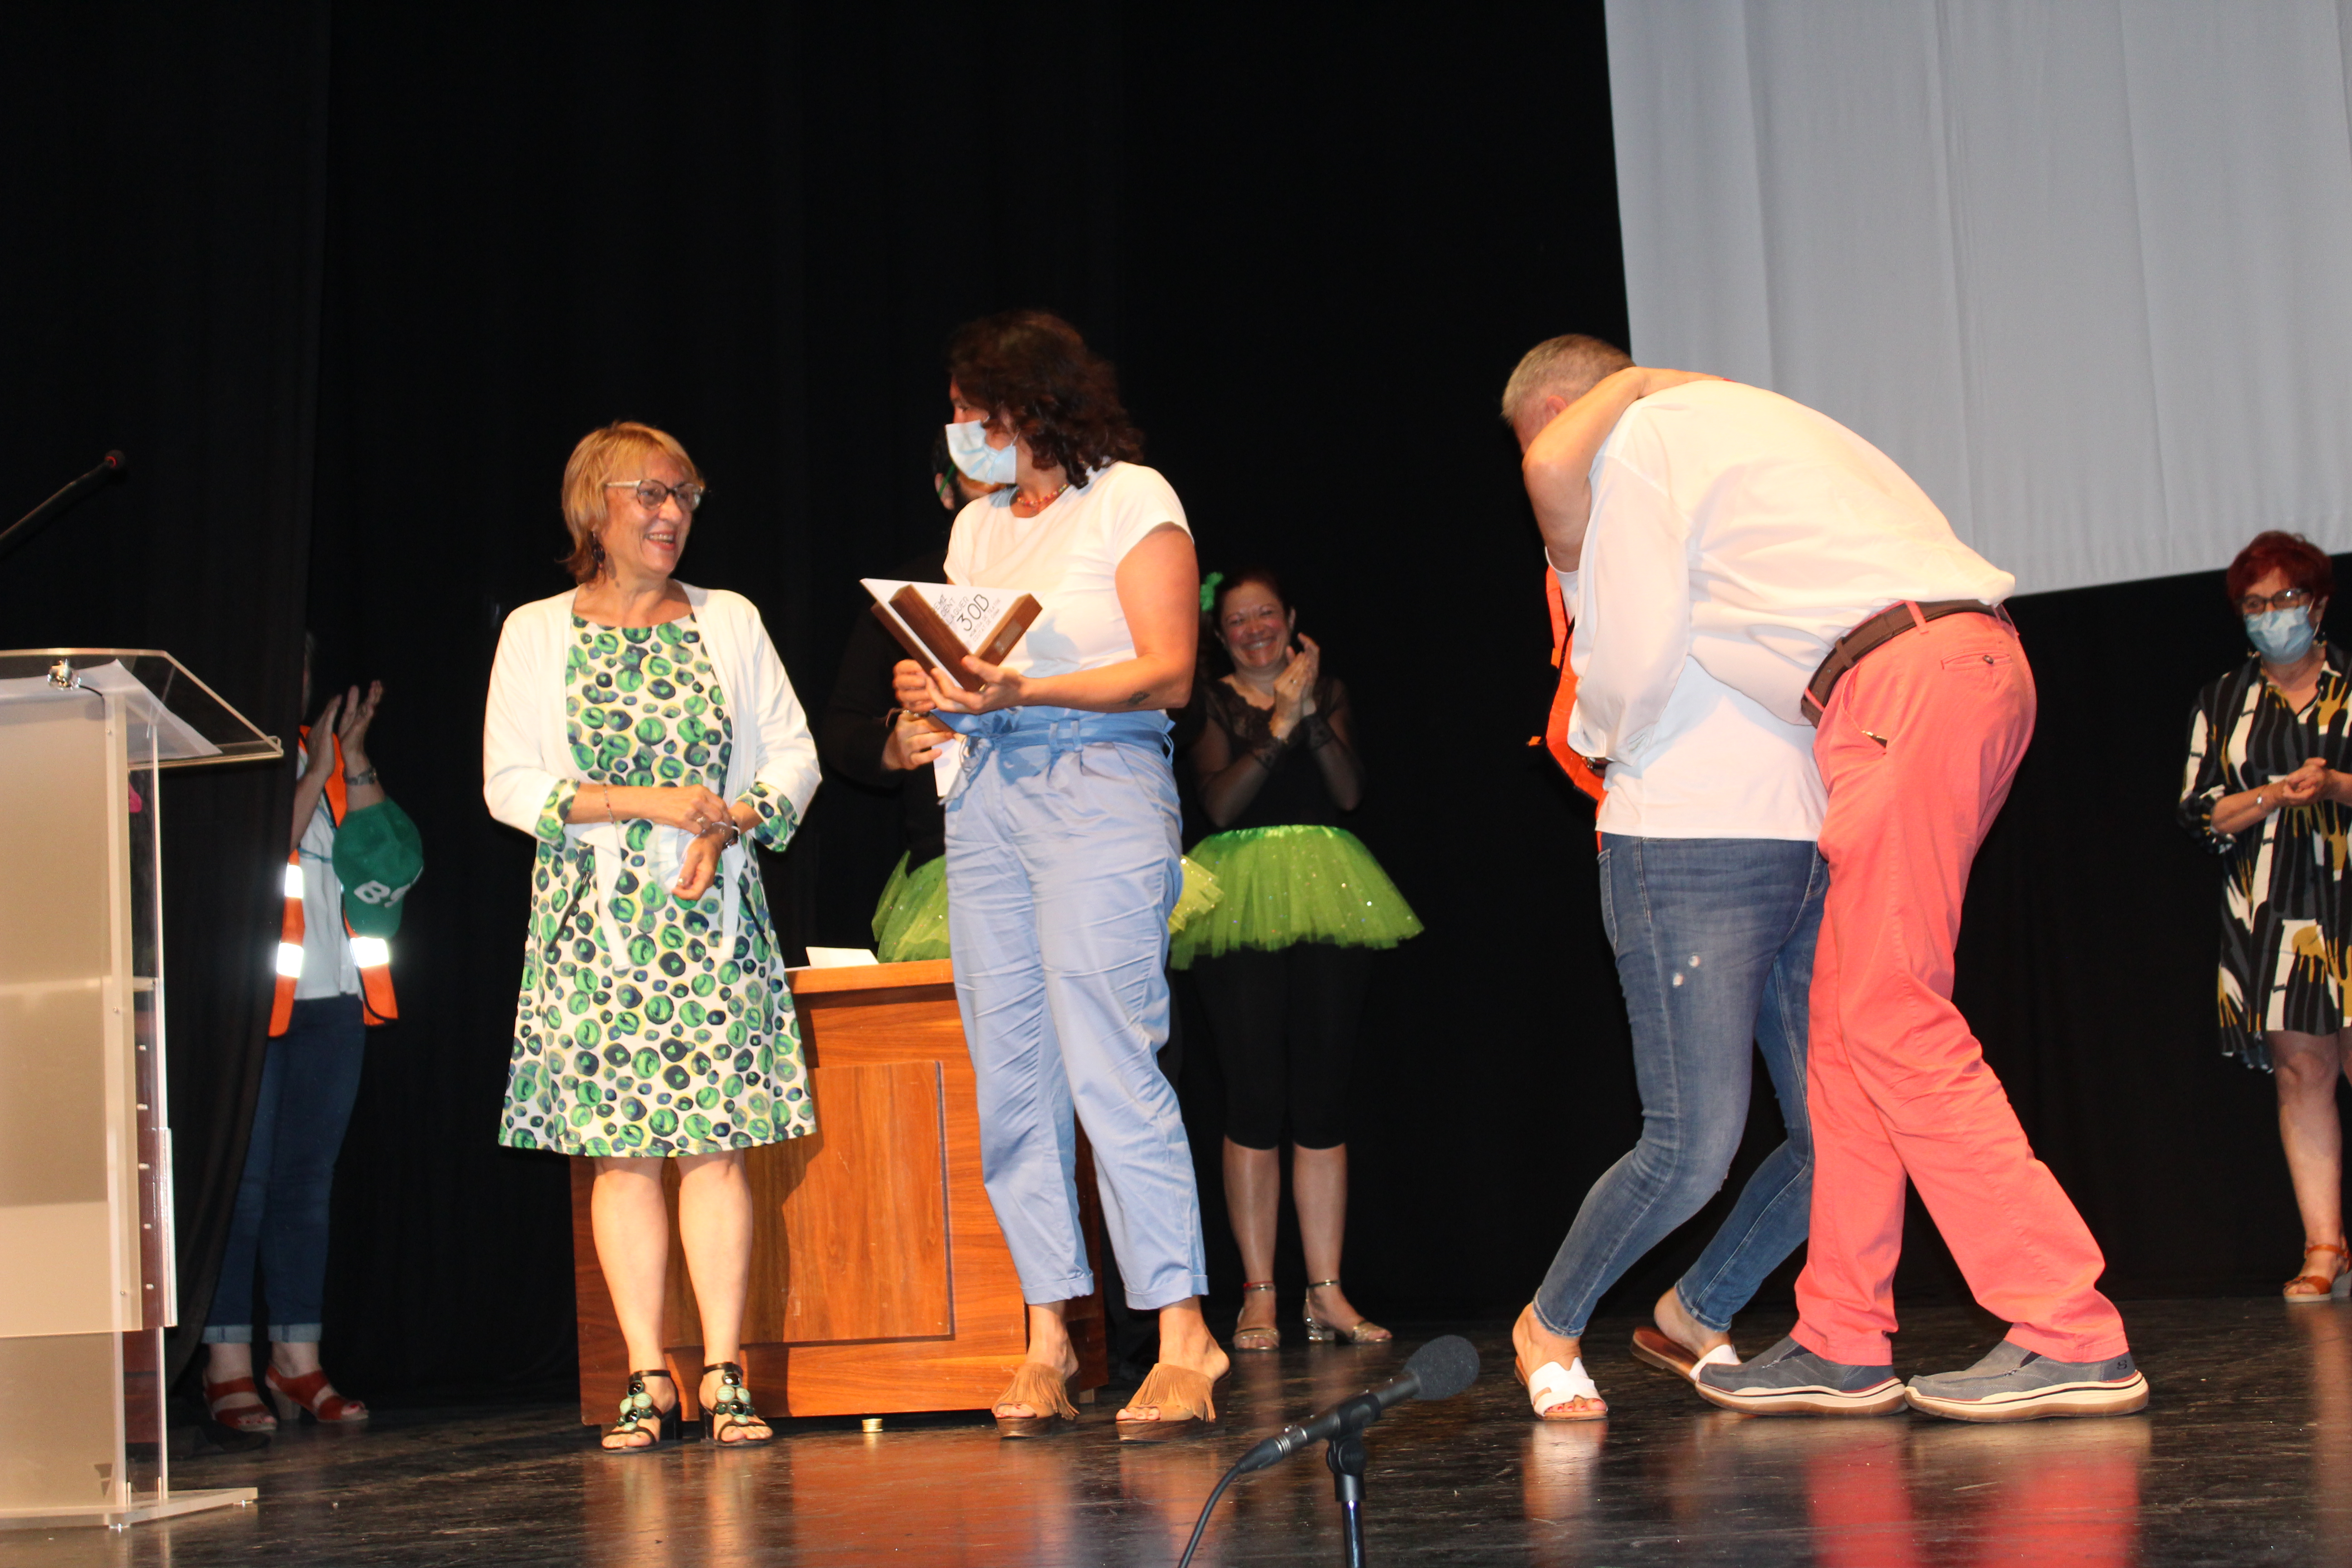 "Una nit al sambori", dels deniers Desficaci Teatre, guanya el premi del públic &#...